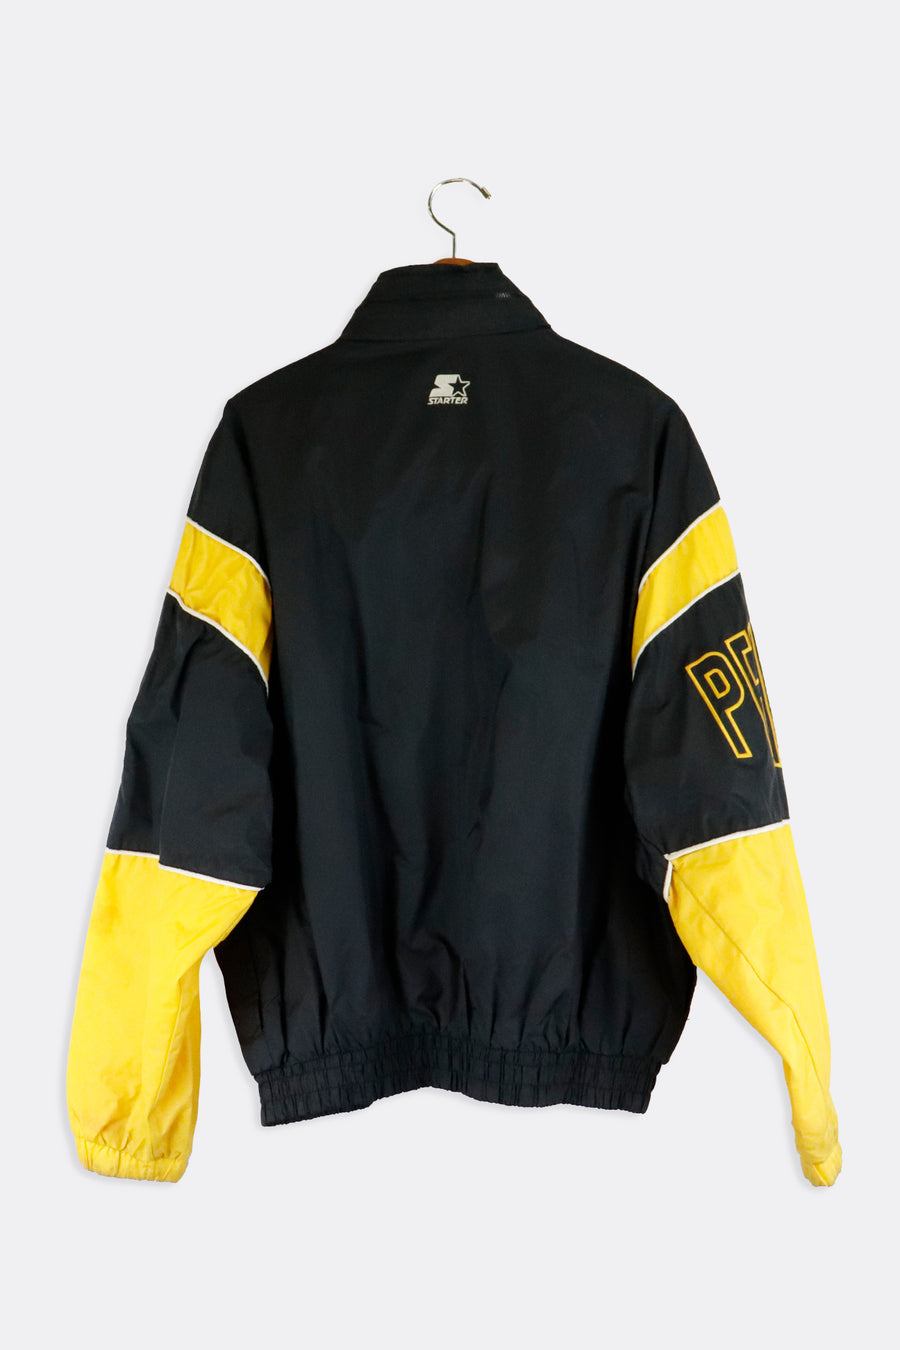 Vintage NHL Pittsburgh Penguins Satin Starter/Warm-up Jacket